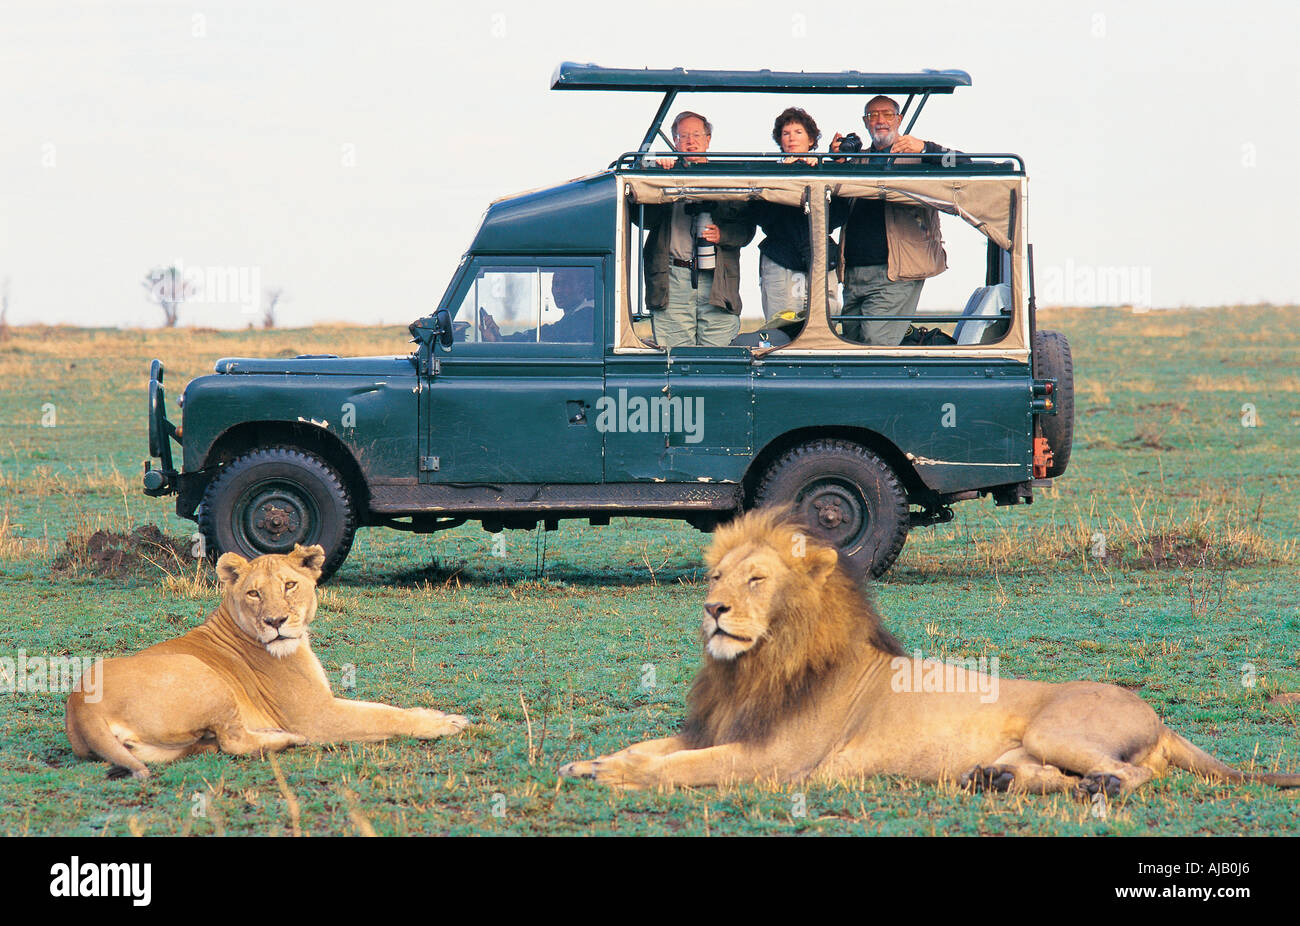 Les touristes sur un jeu dur à proximité de lions dans le Masai Mara National Reserve Kenya Afrique de l'Est Banque D'Images